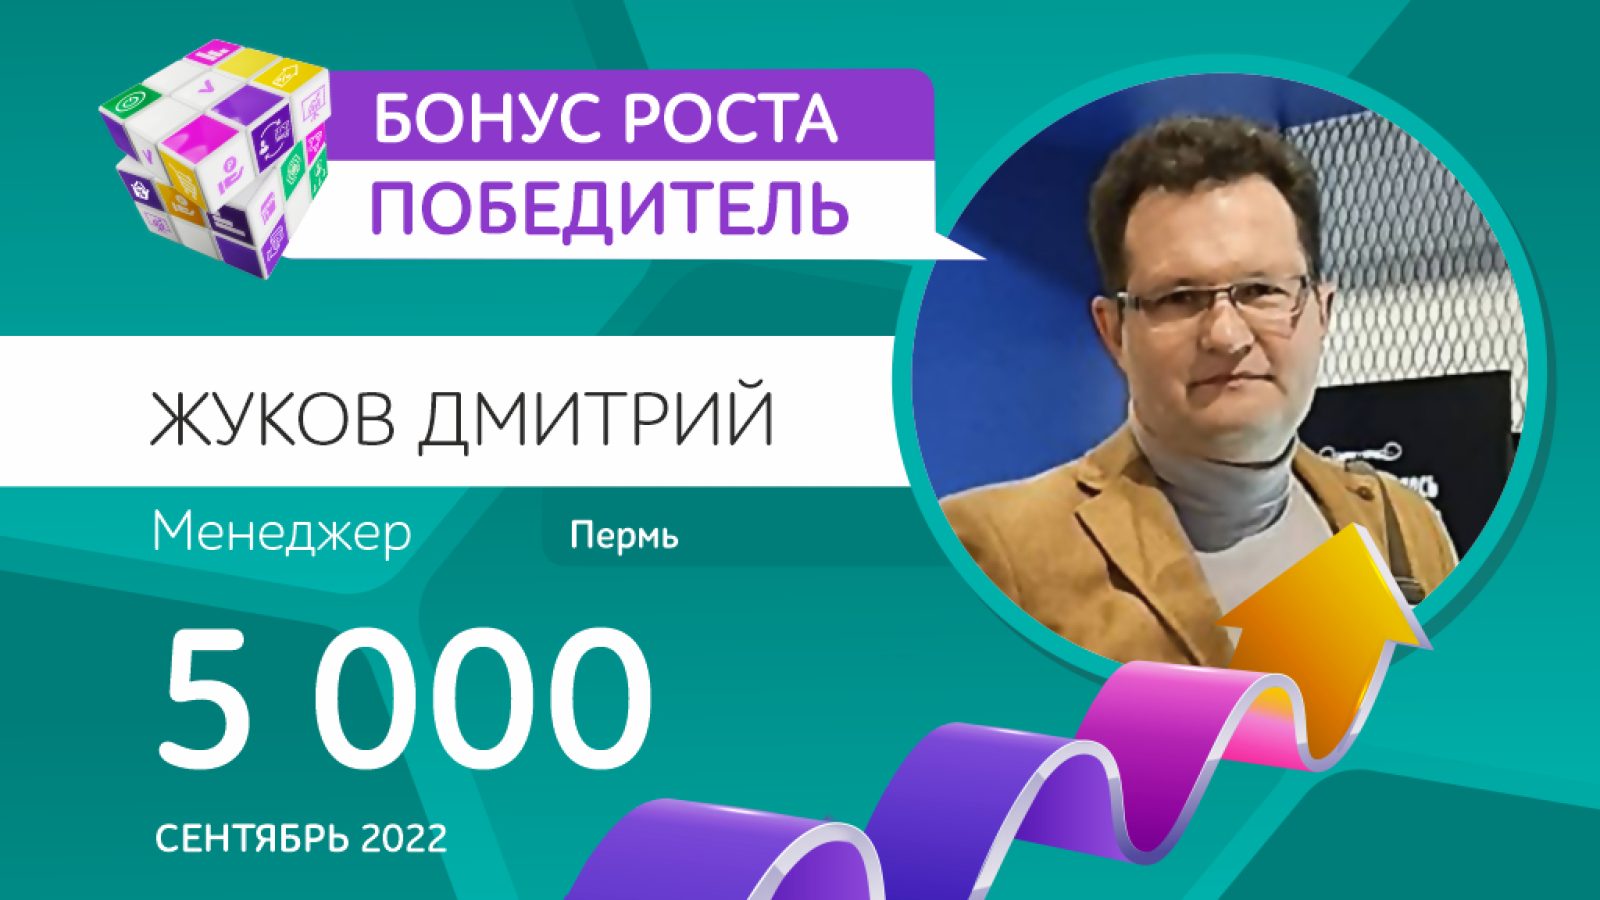 Pobediteli_SENTYABR-2022_ZHUKOV-1